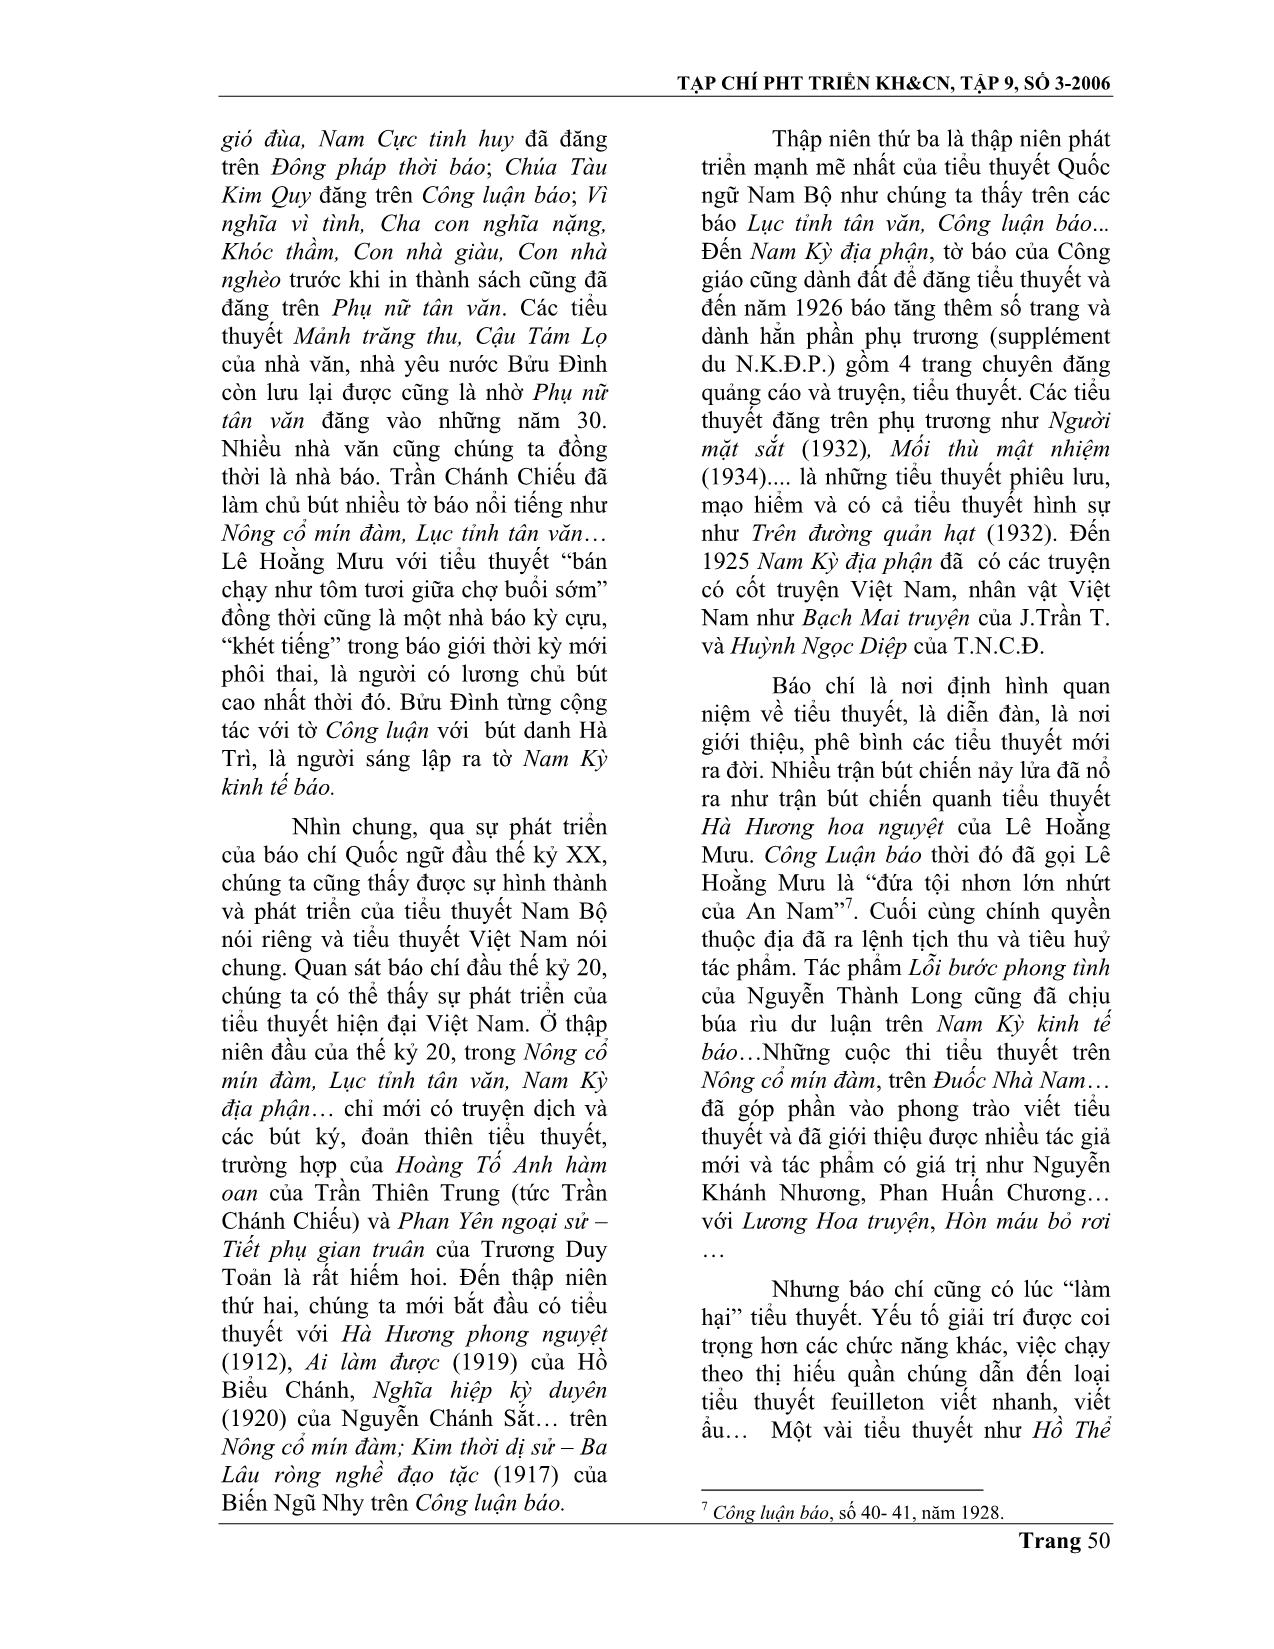 Báo chí quốc ngữ Latinh với sự hình thành và phát triển của tiểu thuyết Nam Bộ cuối thế kỷ XIX đầu thế kỷ XX trang 4